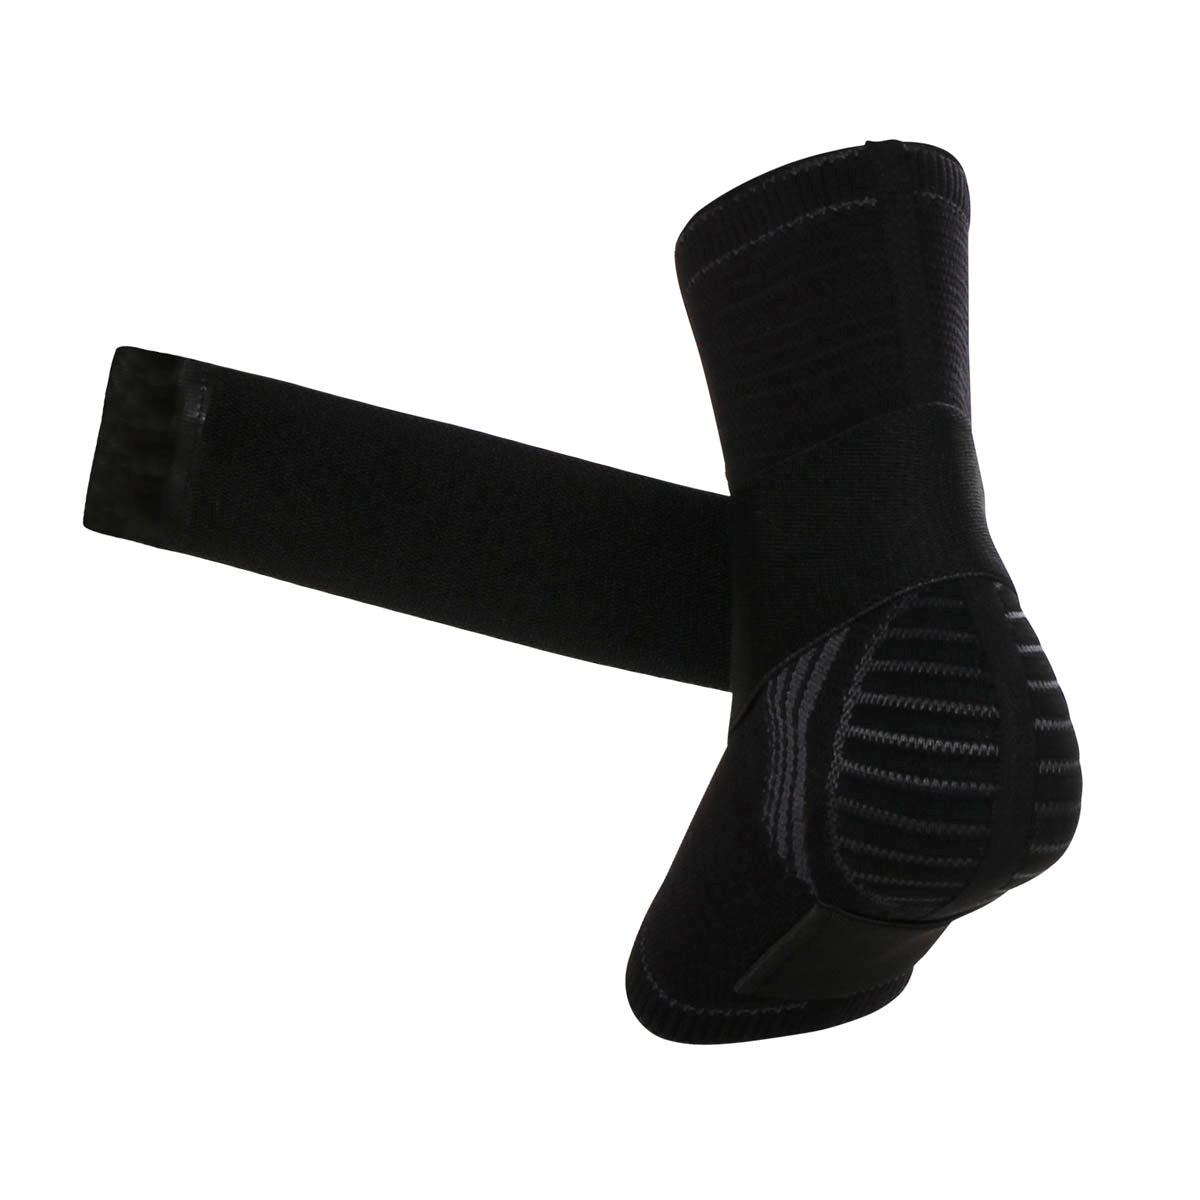 Tornozeleira de Compressão Sense com Faixa - Tecnologia Knit 3D Alasca Tecnologia LtdaTornozeleira